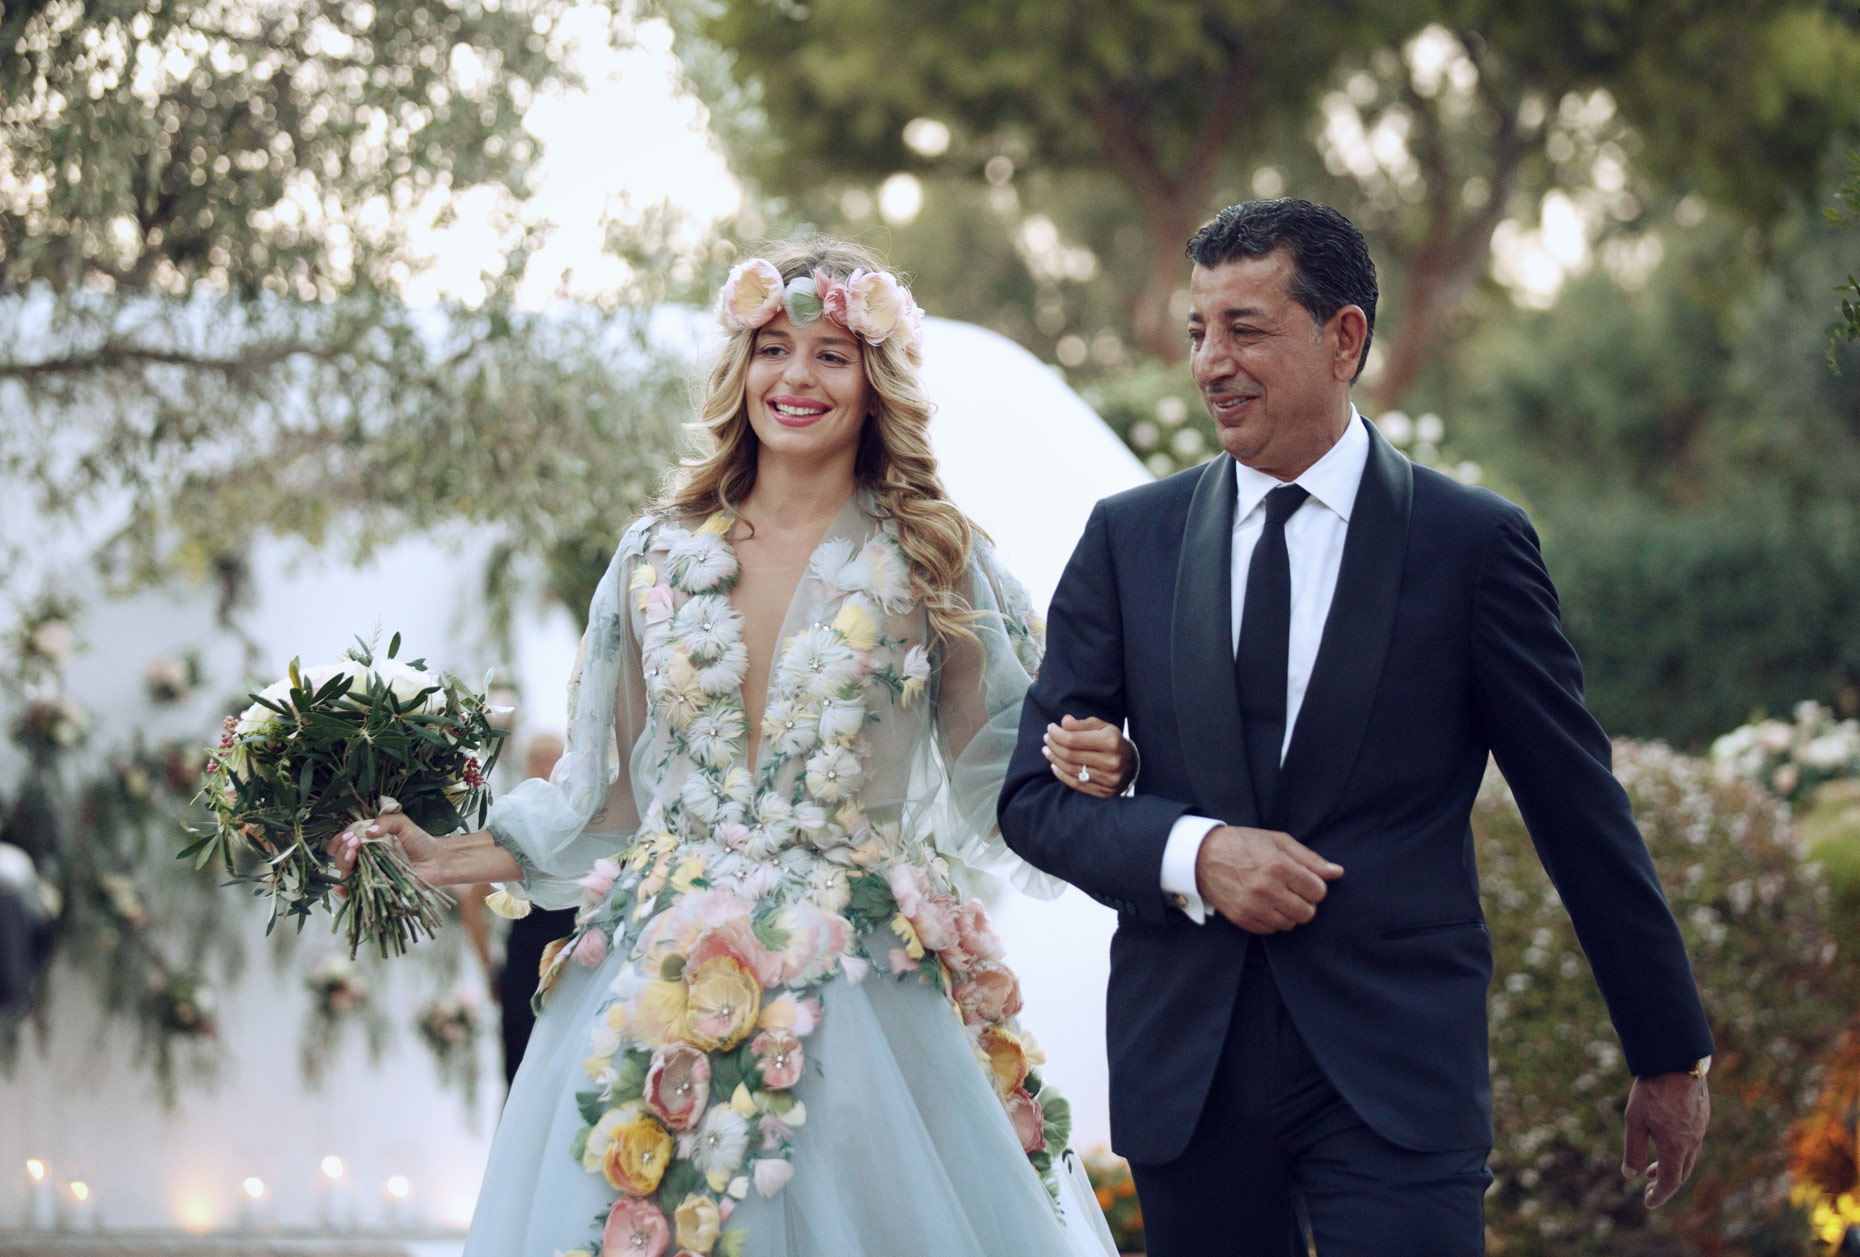 Lebanese wedding at athens riviera 